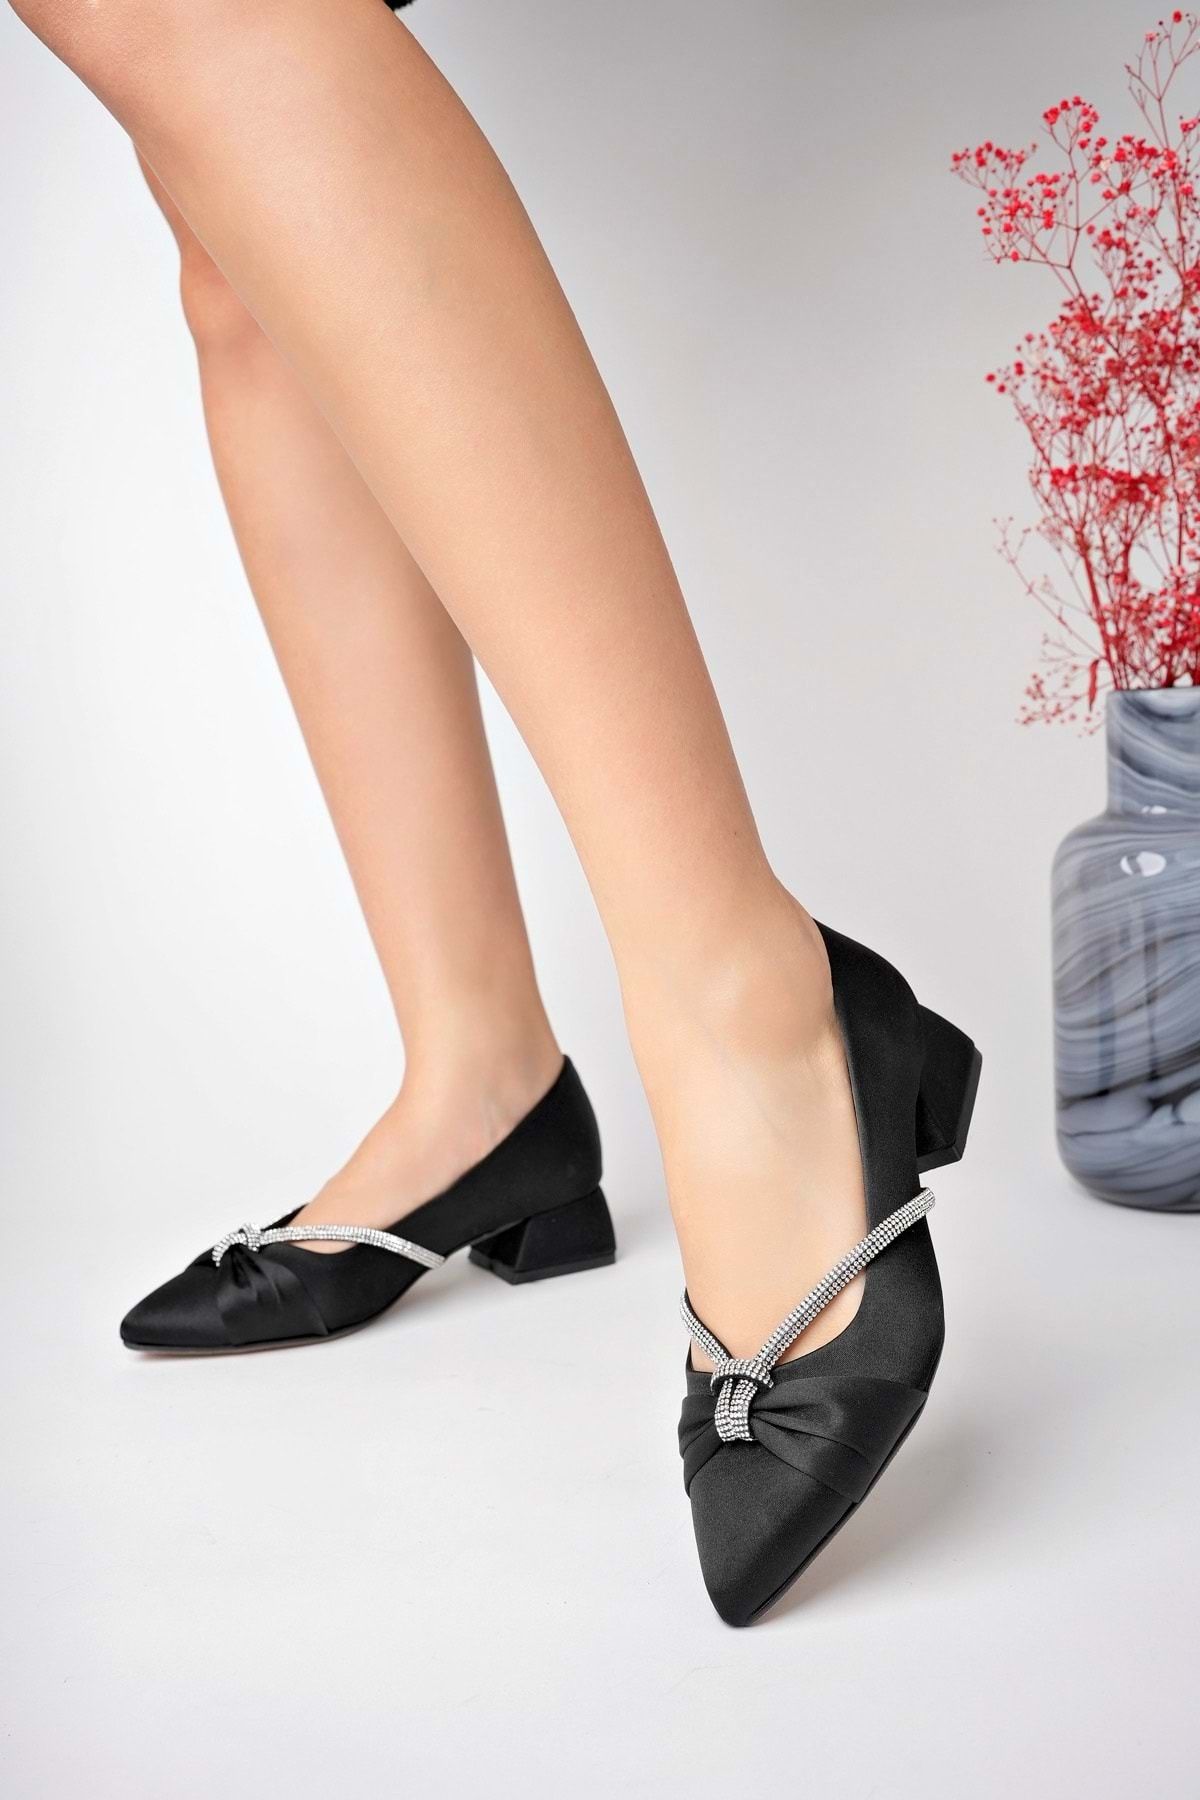 bulutmod Siyah Kadın Düğümlü Taşlı Büyük Numara Kısa Klasik Topuklu Ayakkabı - Siyah - 39